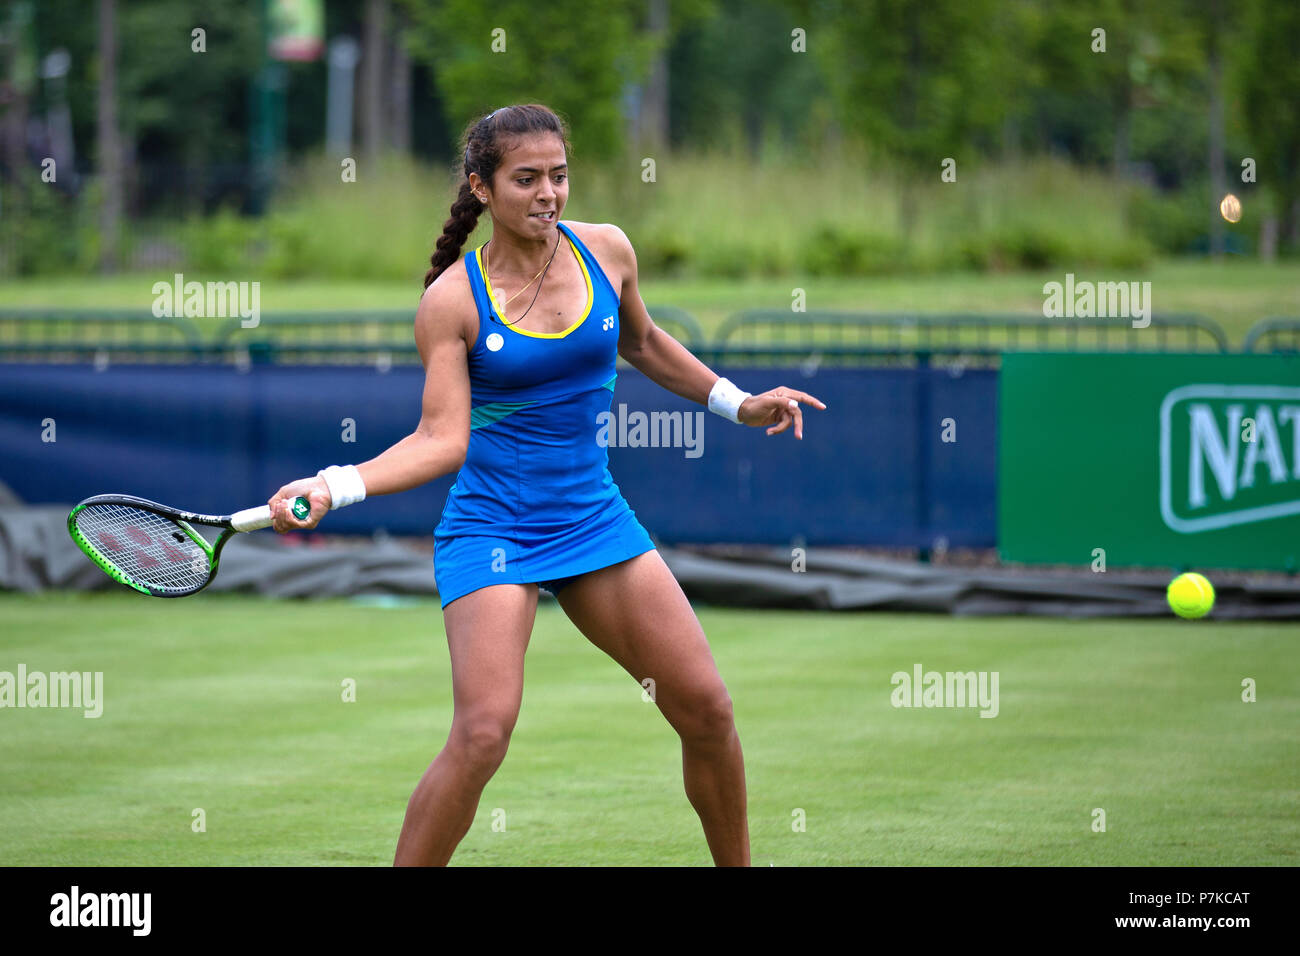 Ankita Raina, joueur de tennis professionnel, l'Inde se prépare à jouer une balle en coup droit de son adversaire au cours de la vallée de la Nature 2018 Ouvrir dans Nottingham, Royaume-Uni. Banque D'Images